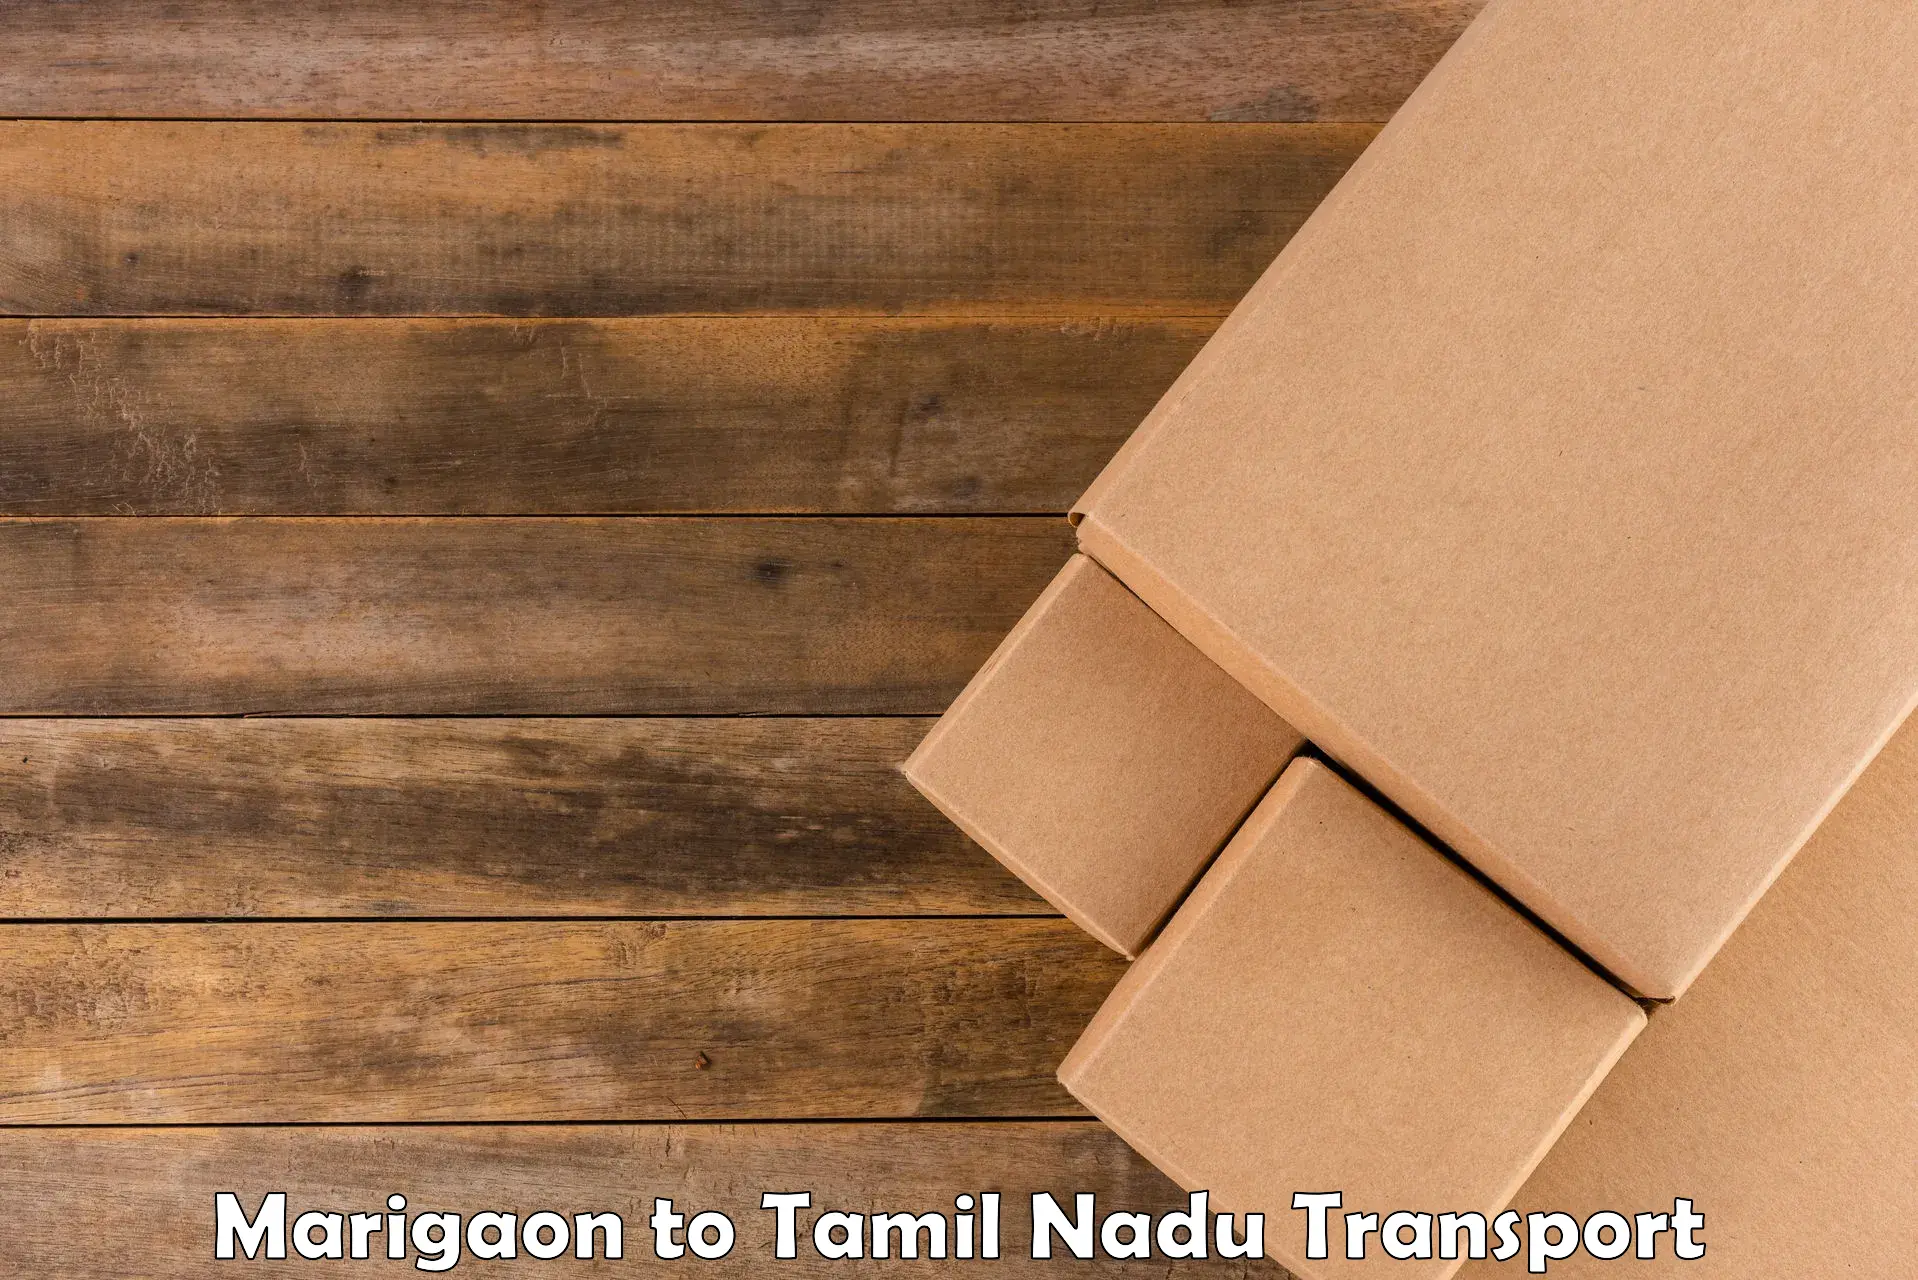 Land transport services in Marigaon to Tiruturaipundi